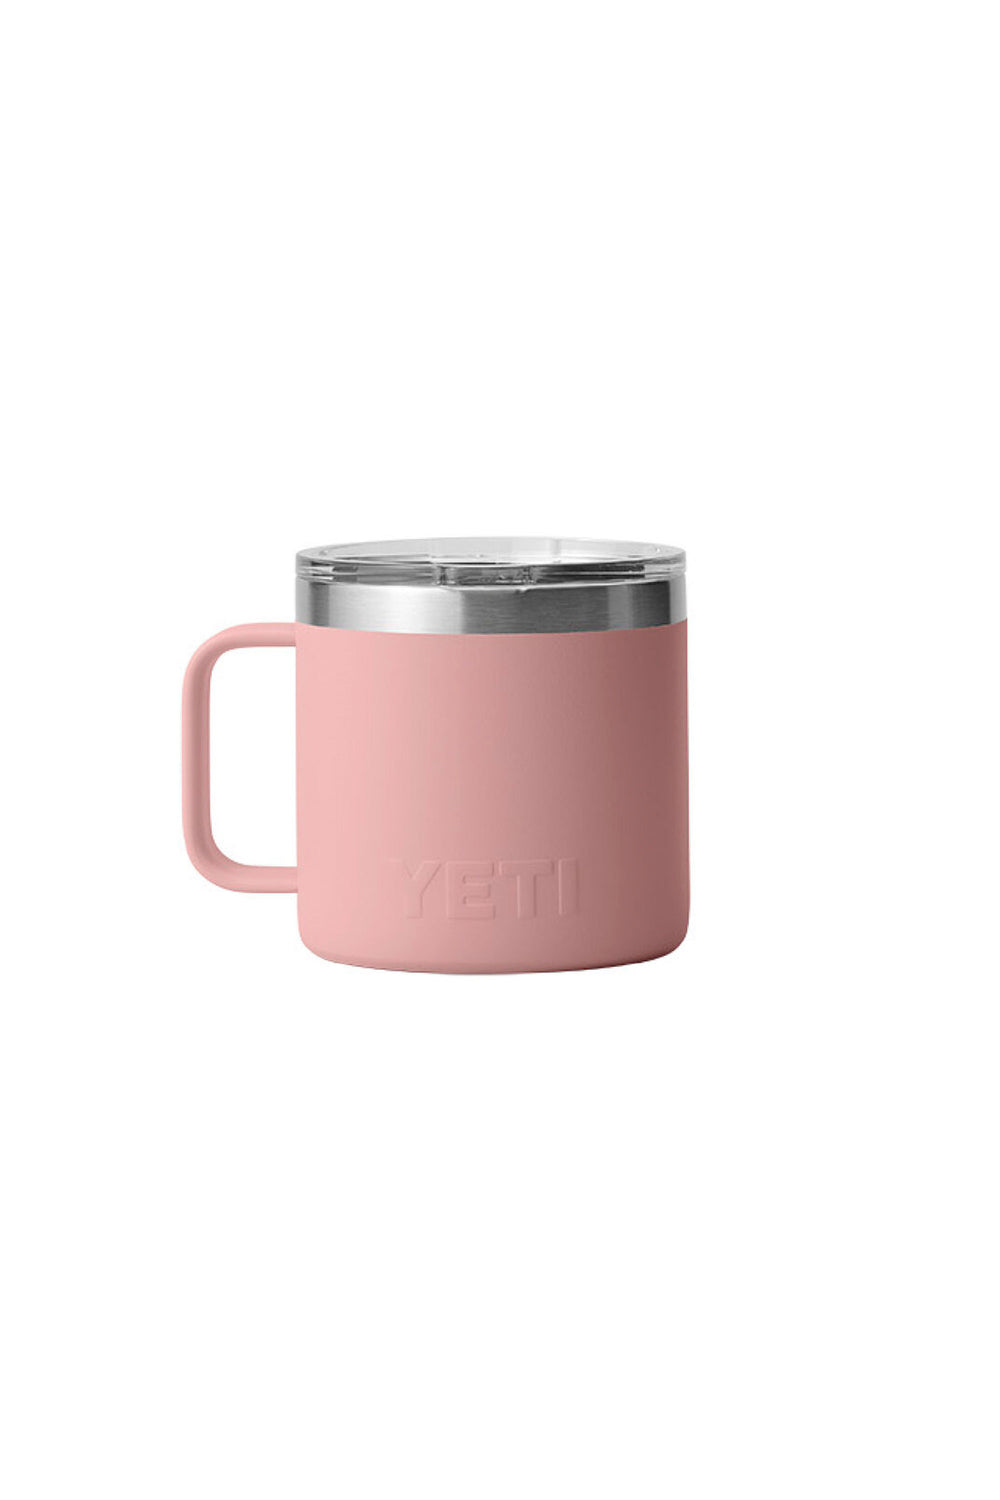 YETI Rambler - 14oz Mug - Stainless Steel